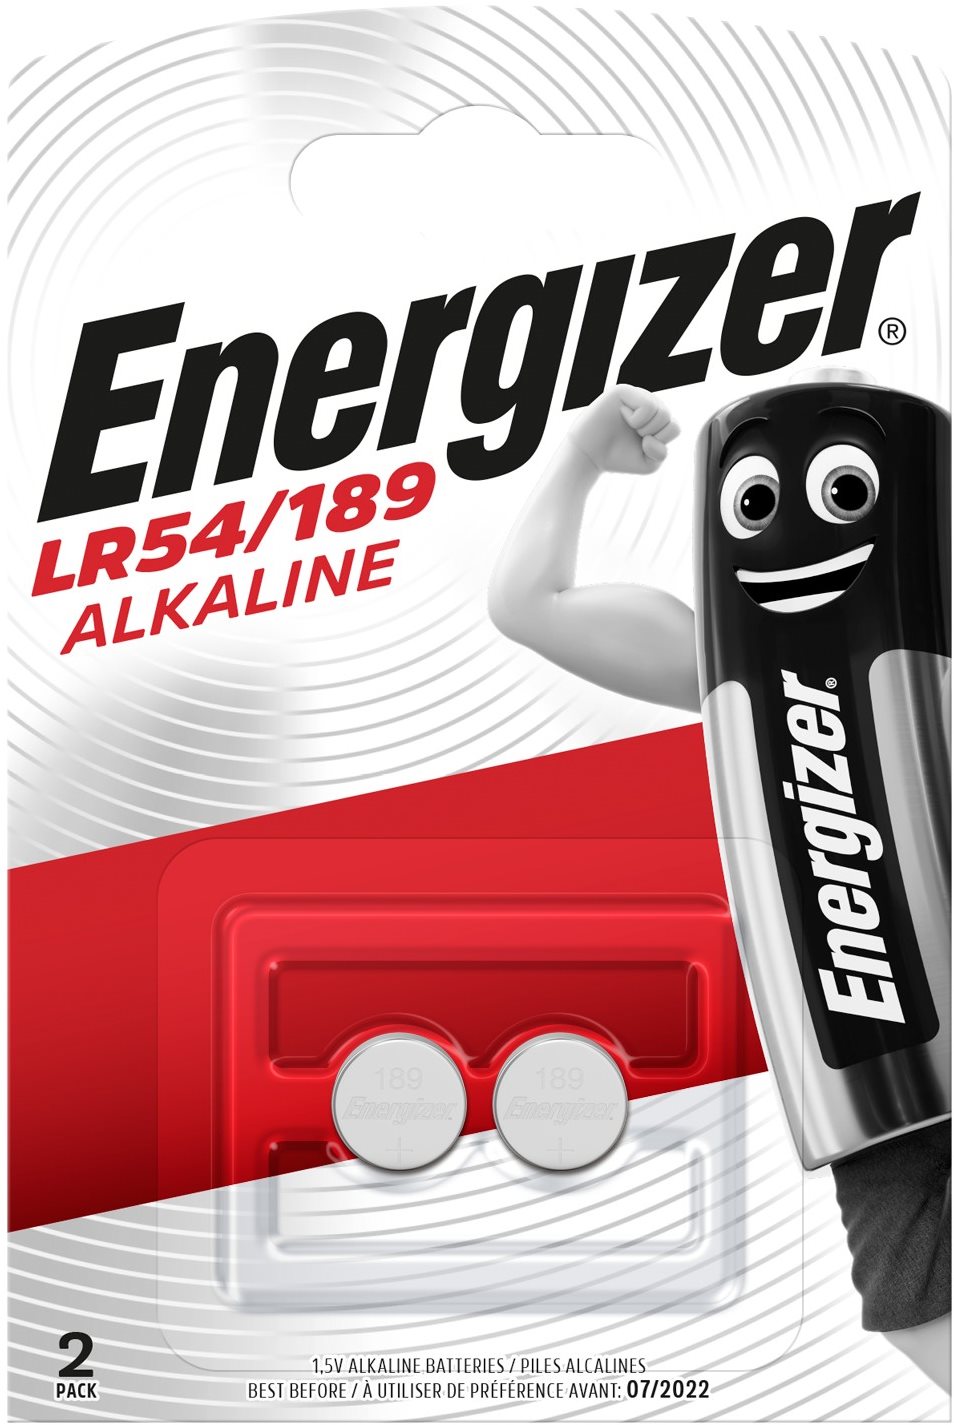 Energizer speciális alkáli elem LR54 / 189 2 db